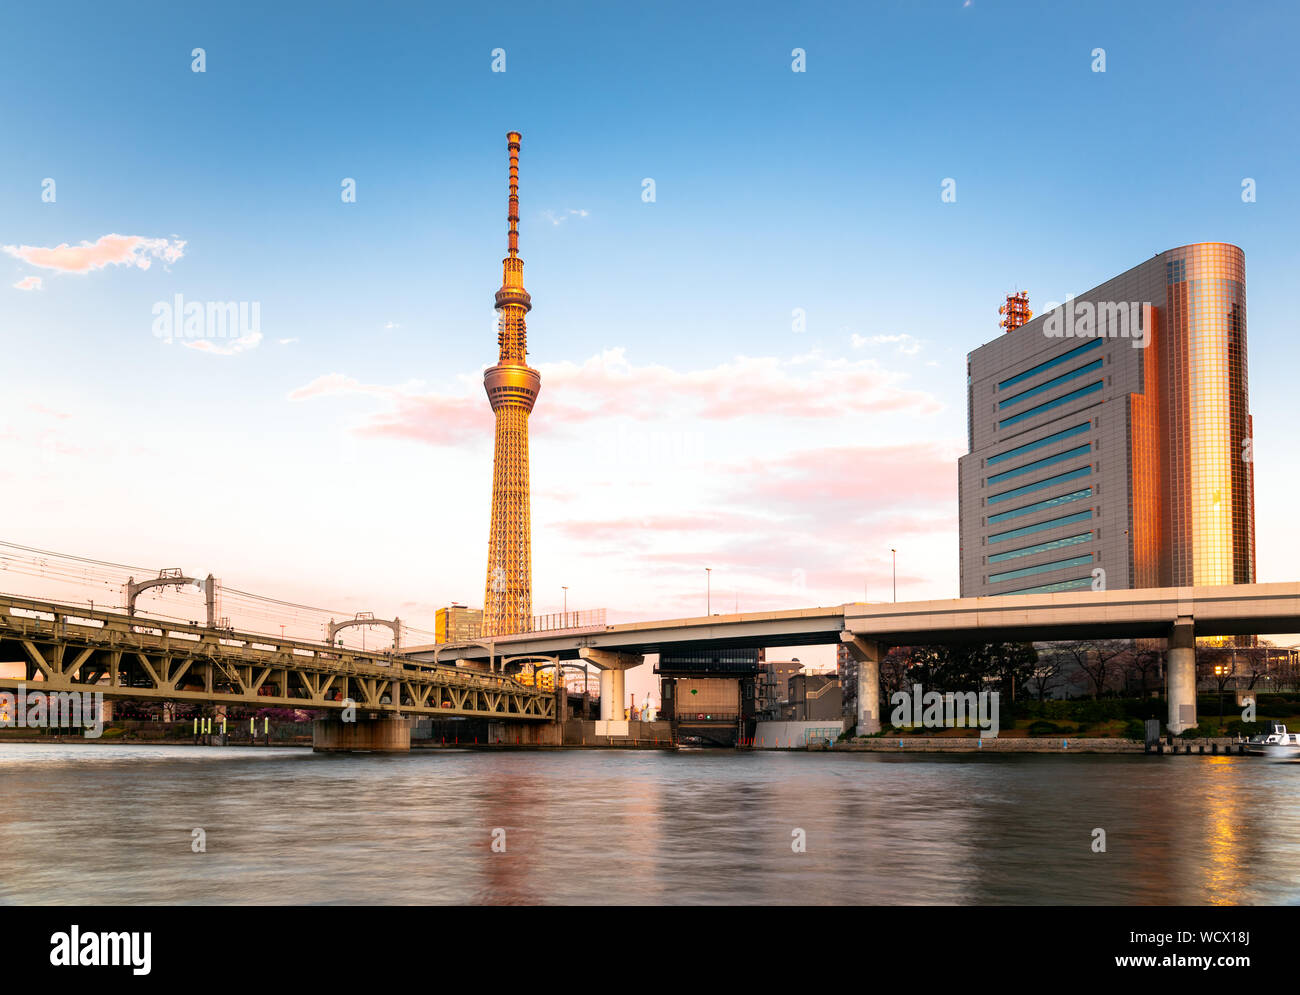 Tour Tokyo Skytree chaudement éclairé par un soleil couchant comme seeen à partir de la banque de la rivière Sumida. Une épouse de fer est visible en premier plan. Banque D'Images